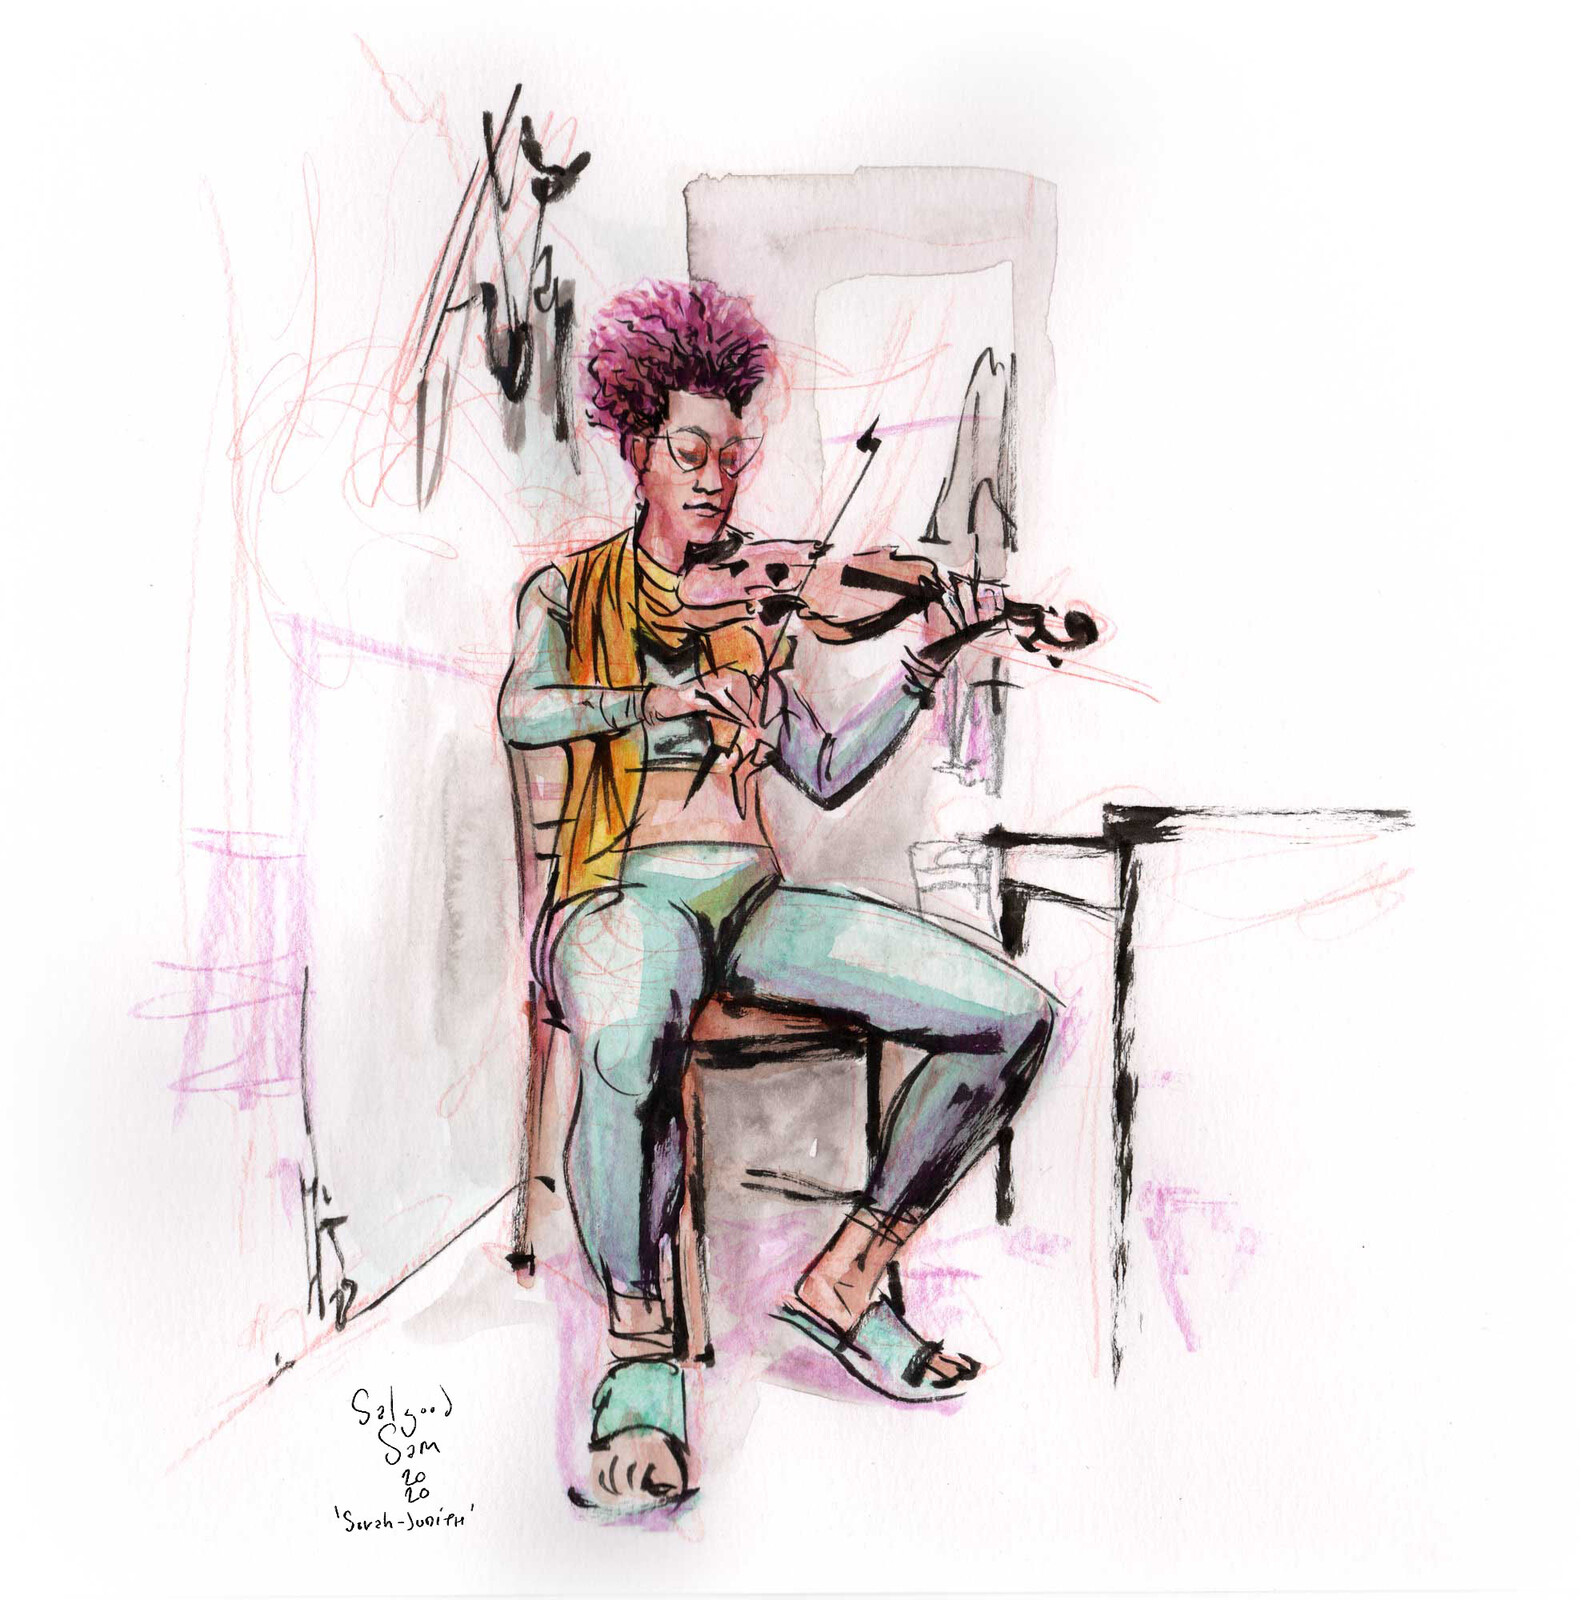 Sarah-Judith Kayiri in col-erase, watercolor and brushpen.